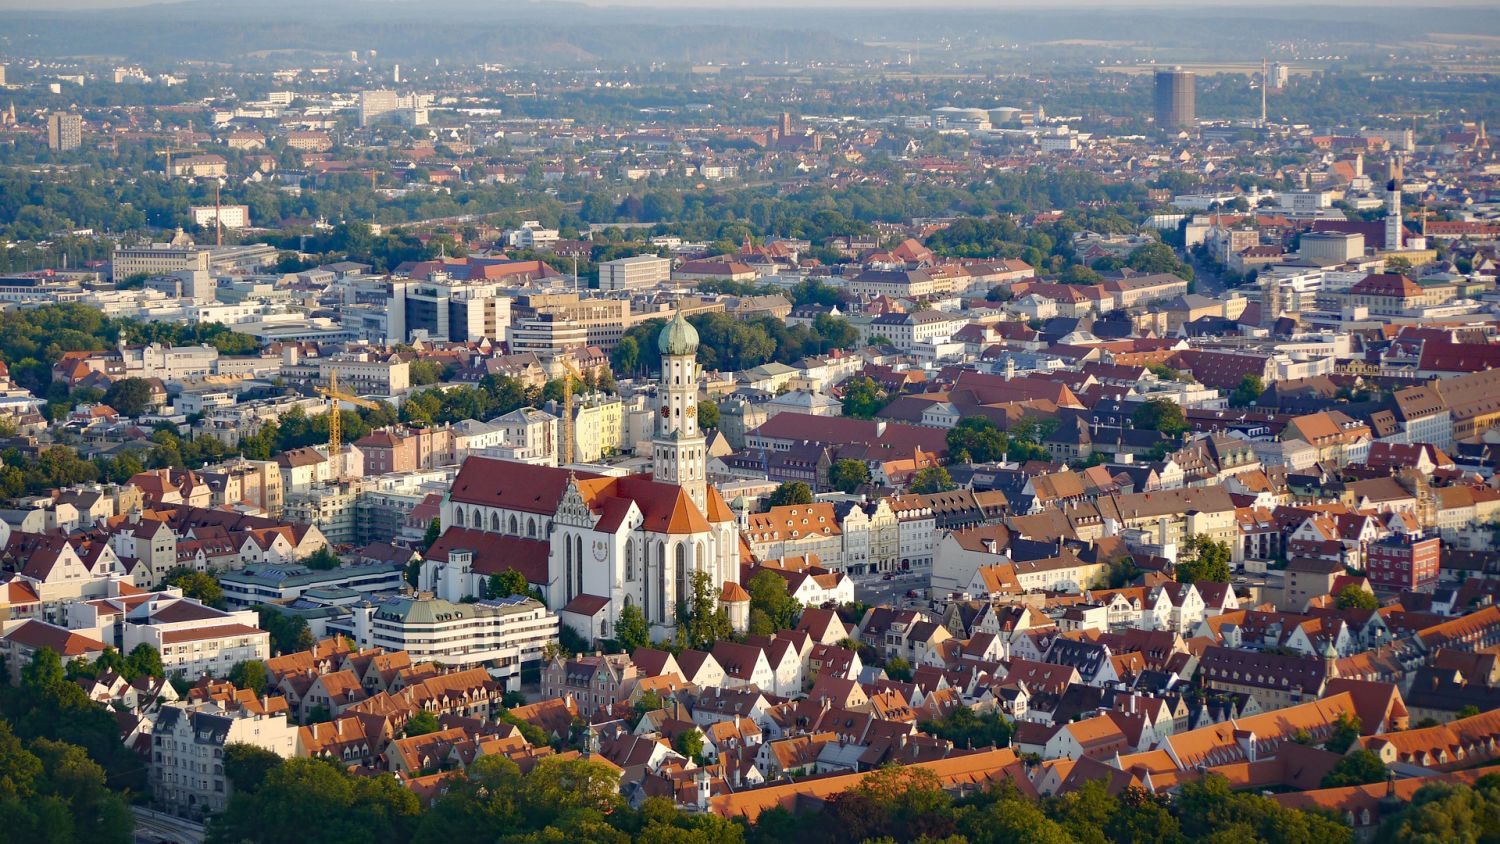 Ansicht auf die Stadt Augsburg von oben